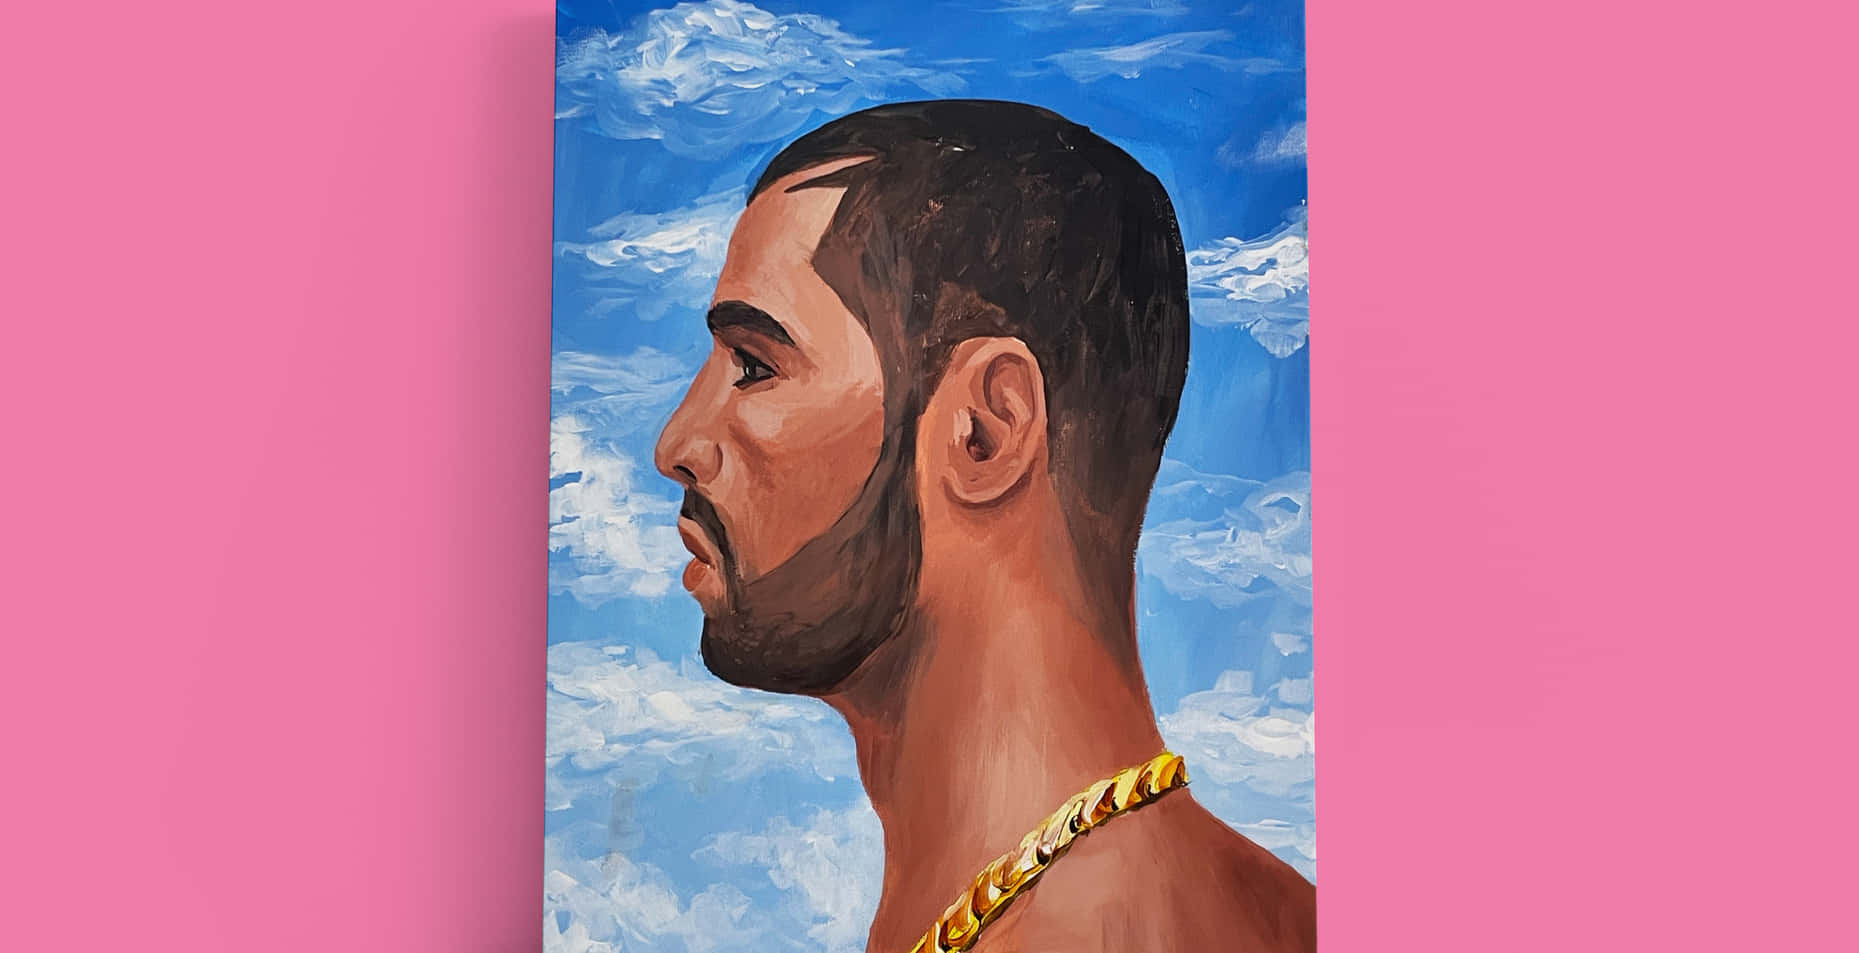 Drake Nothing Was The Same Wallpaper